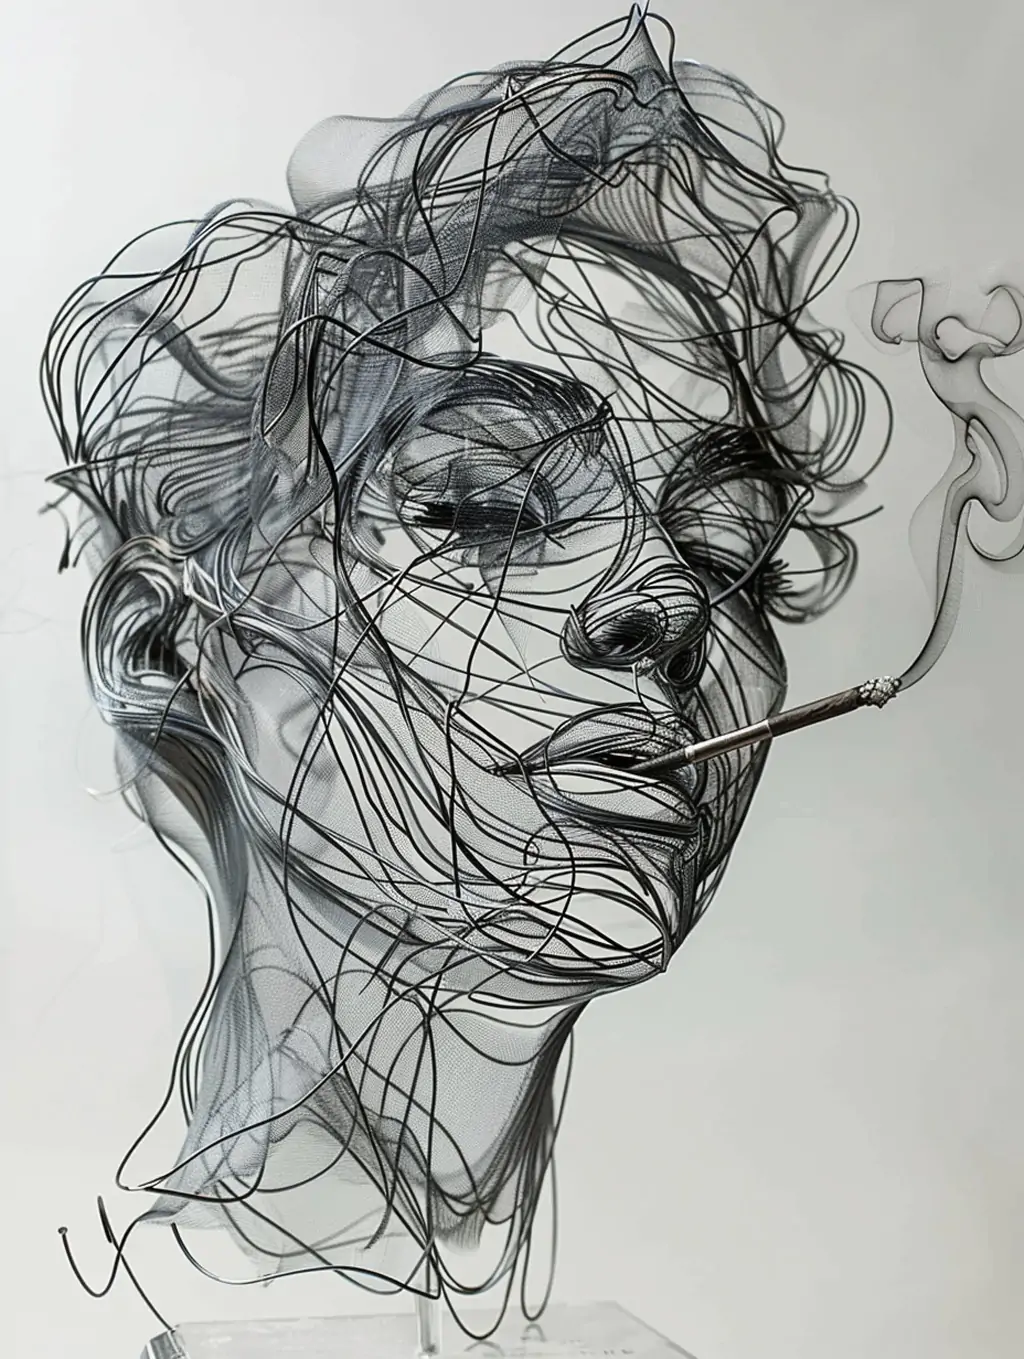 创意手绘逼真女孩模特抽烟金属丝复杂线条交织雕塑艺术插图海报midjourney关键词咒语 - Ai宇宙吧--Ai宇宙吧-